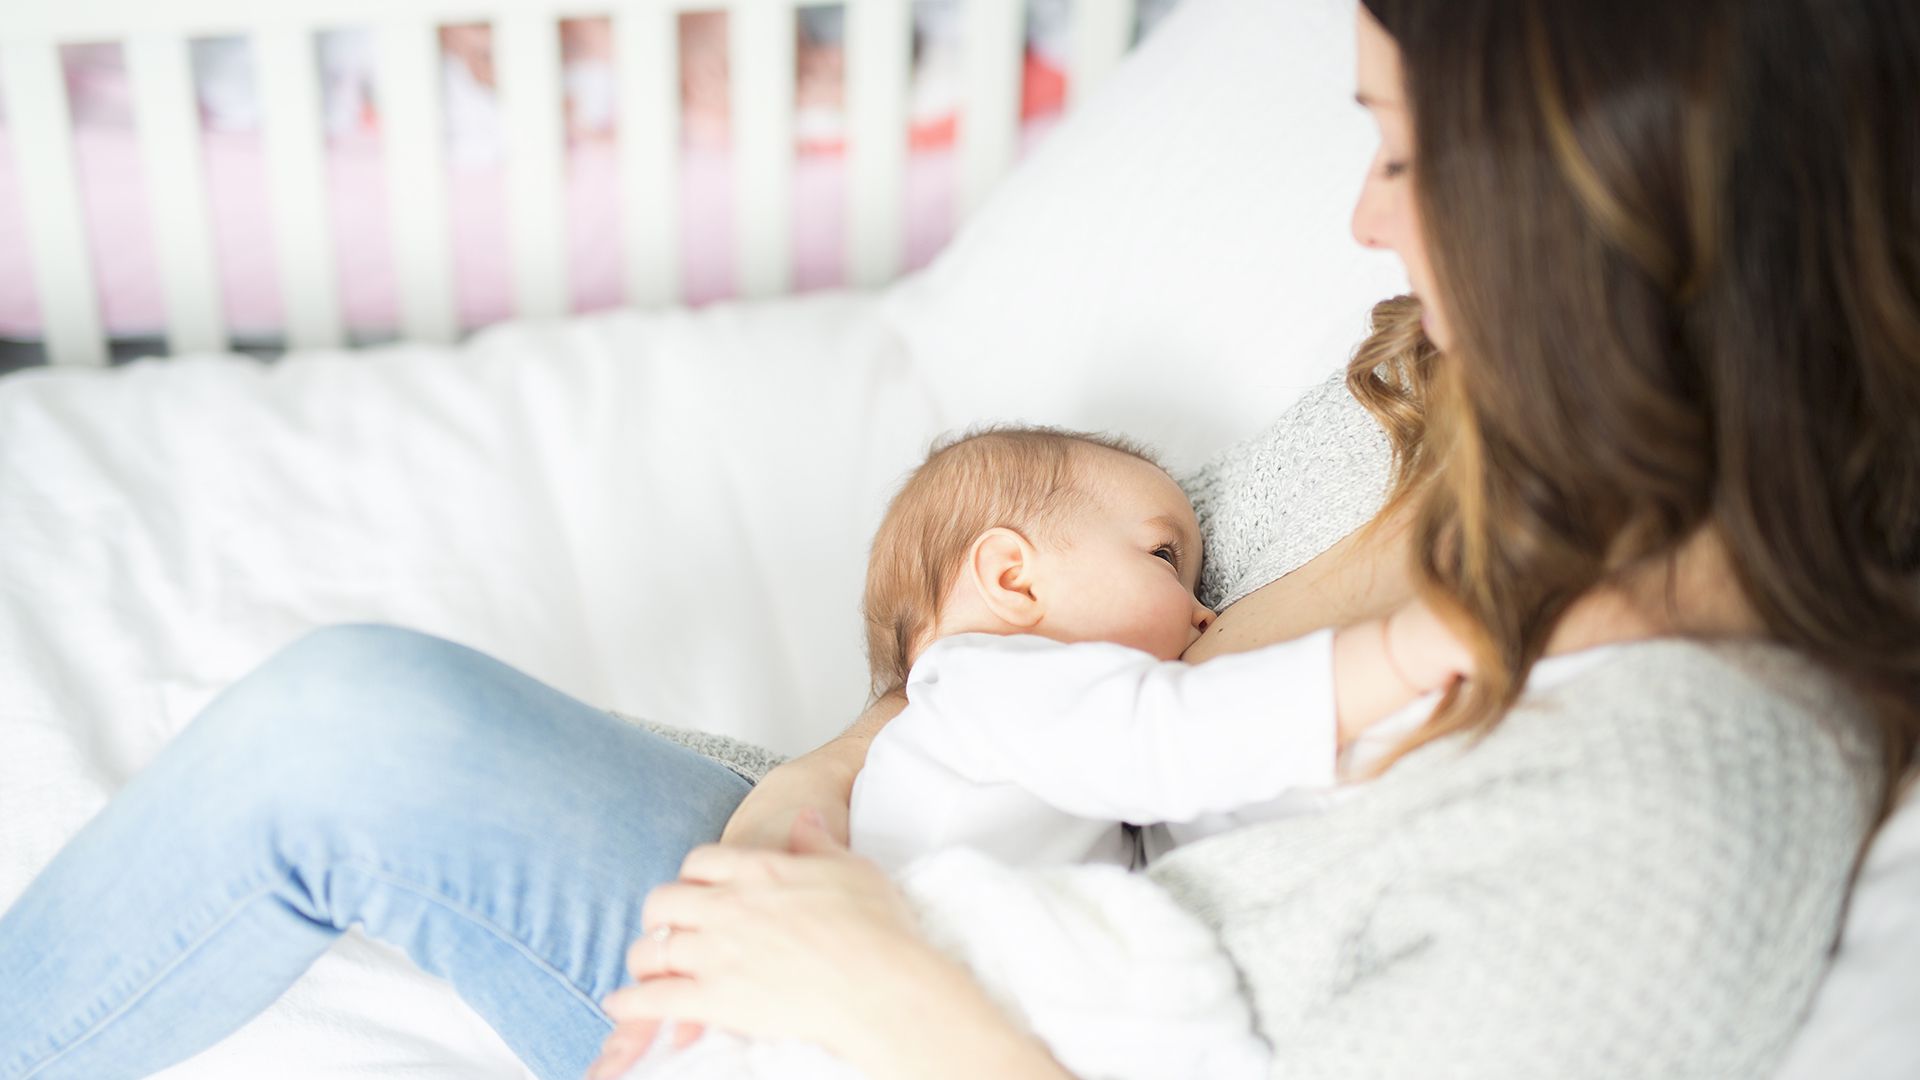 Mantener la lactancia materna es una de las recomendaciones para prevenir enfermedades en los más chicos (Shutterstock)